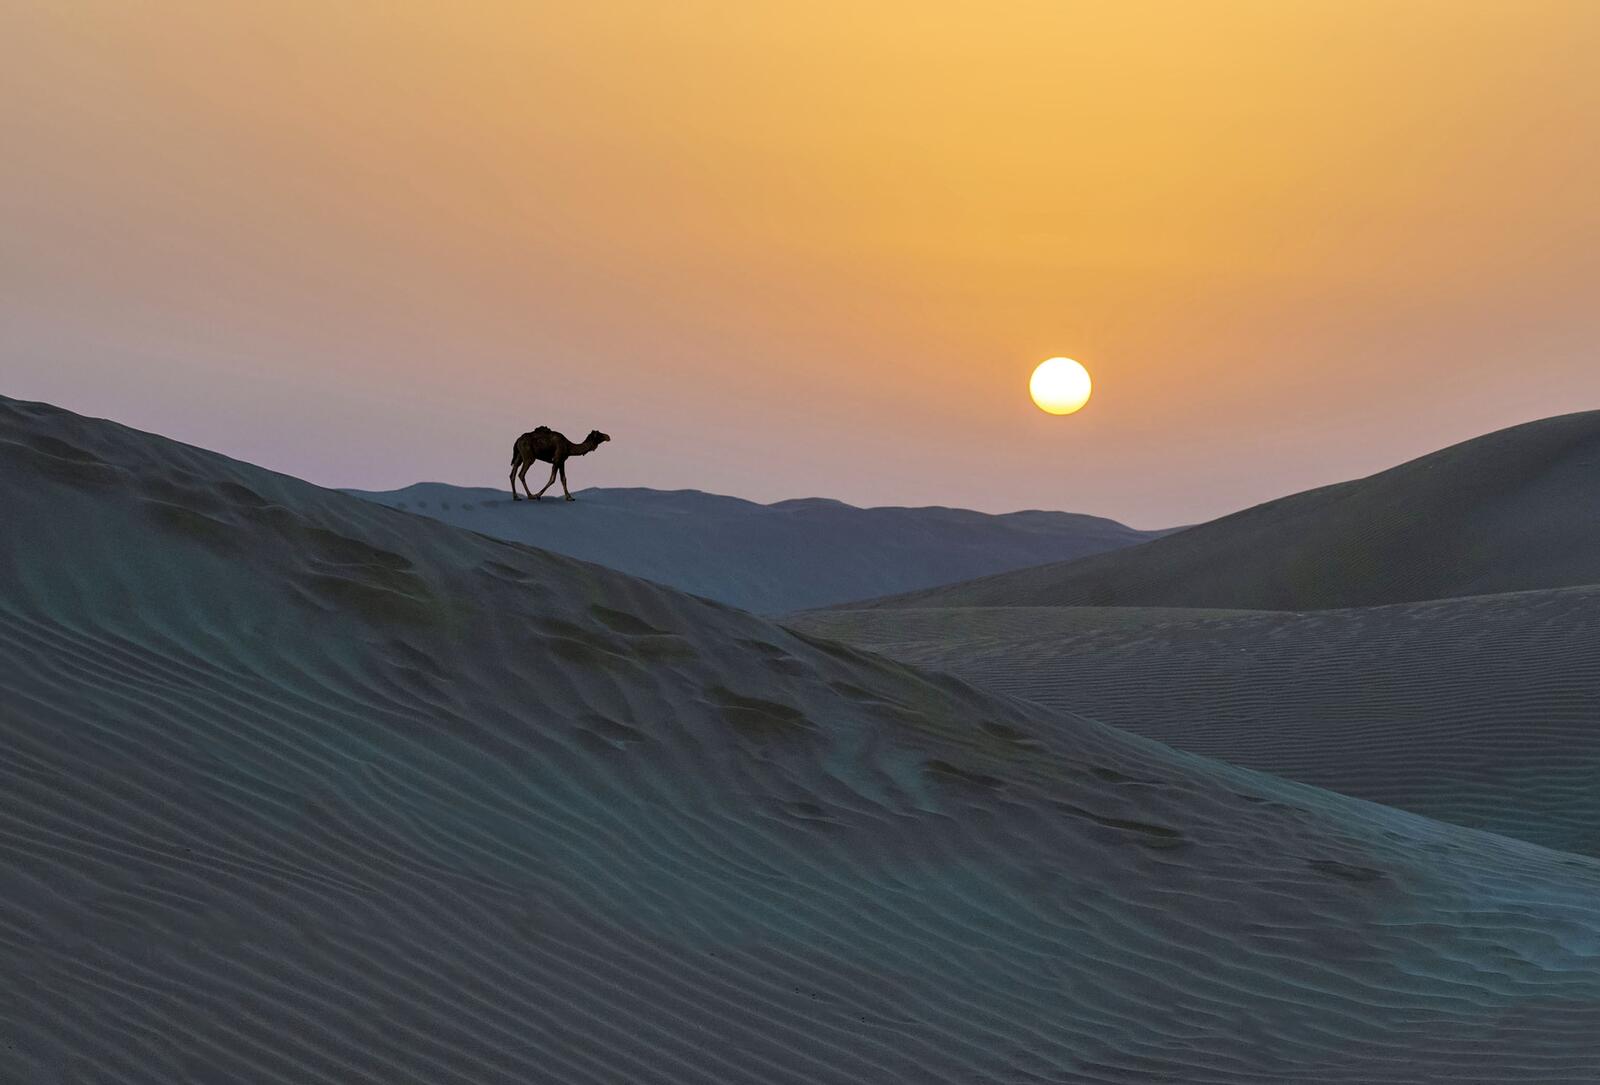 Wallpapers Kara-Kum desert sand sunset on the desktop